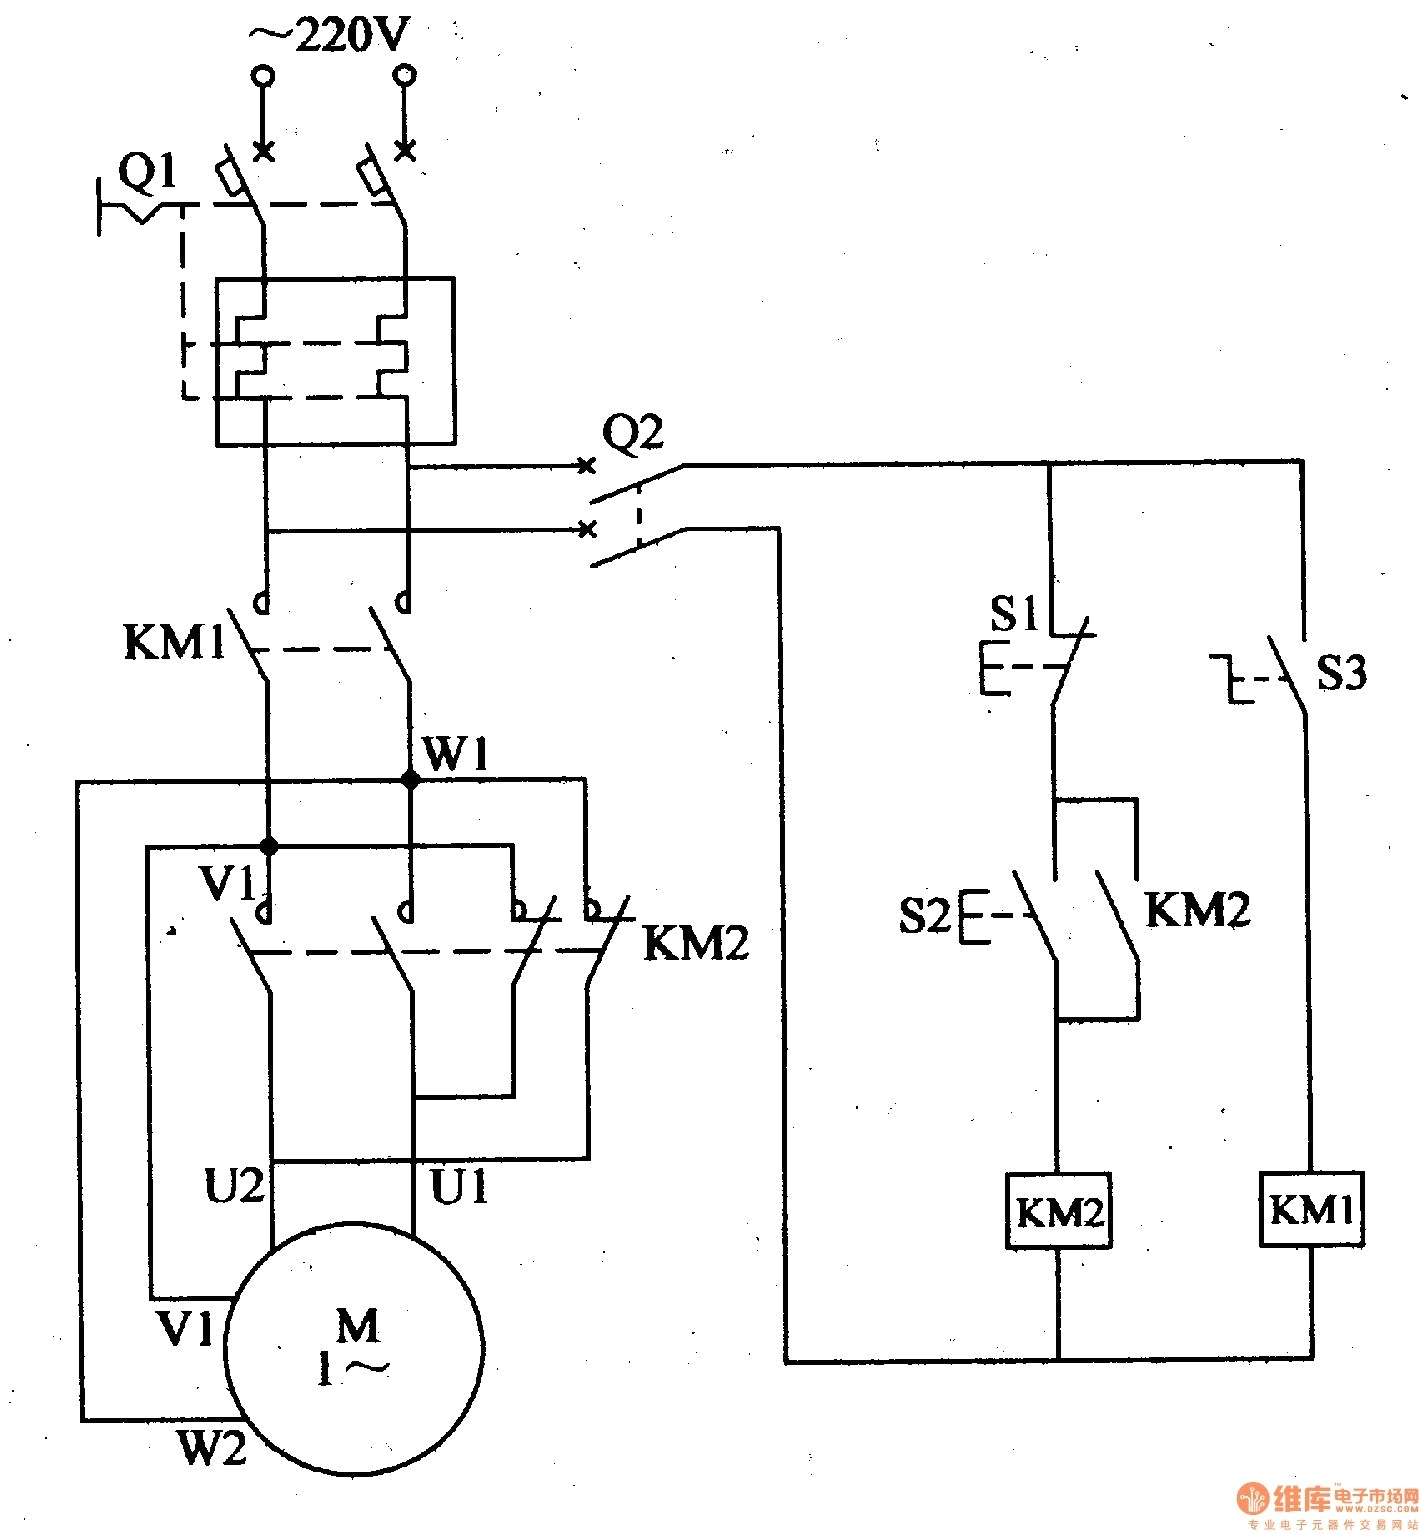 220 electric motor wiring diagram 110 wiring diagram databaseelectric motor wiring diagram 110 to 220